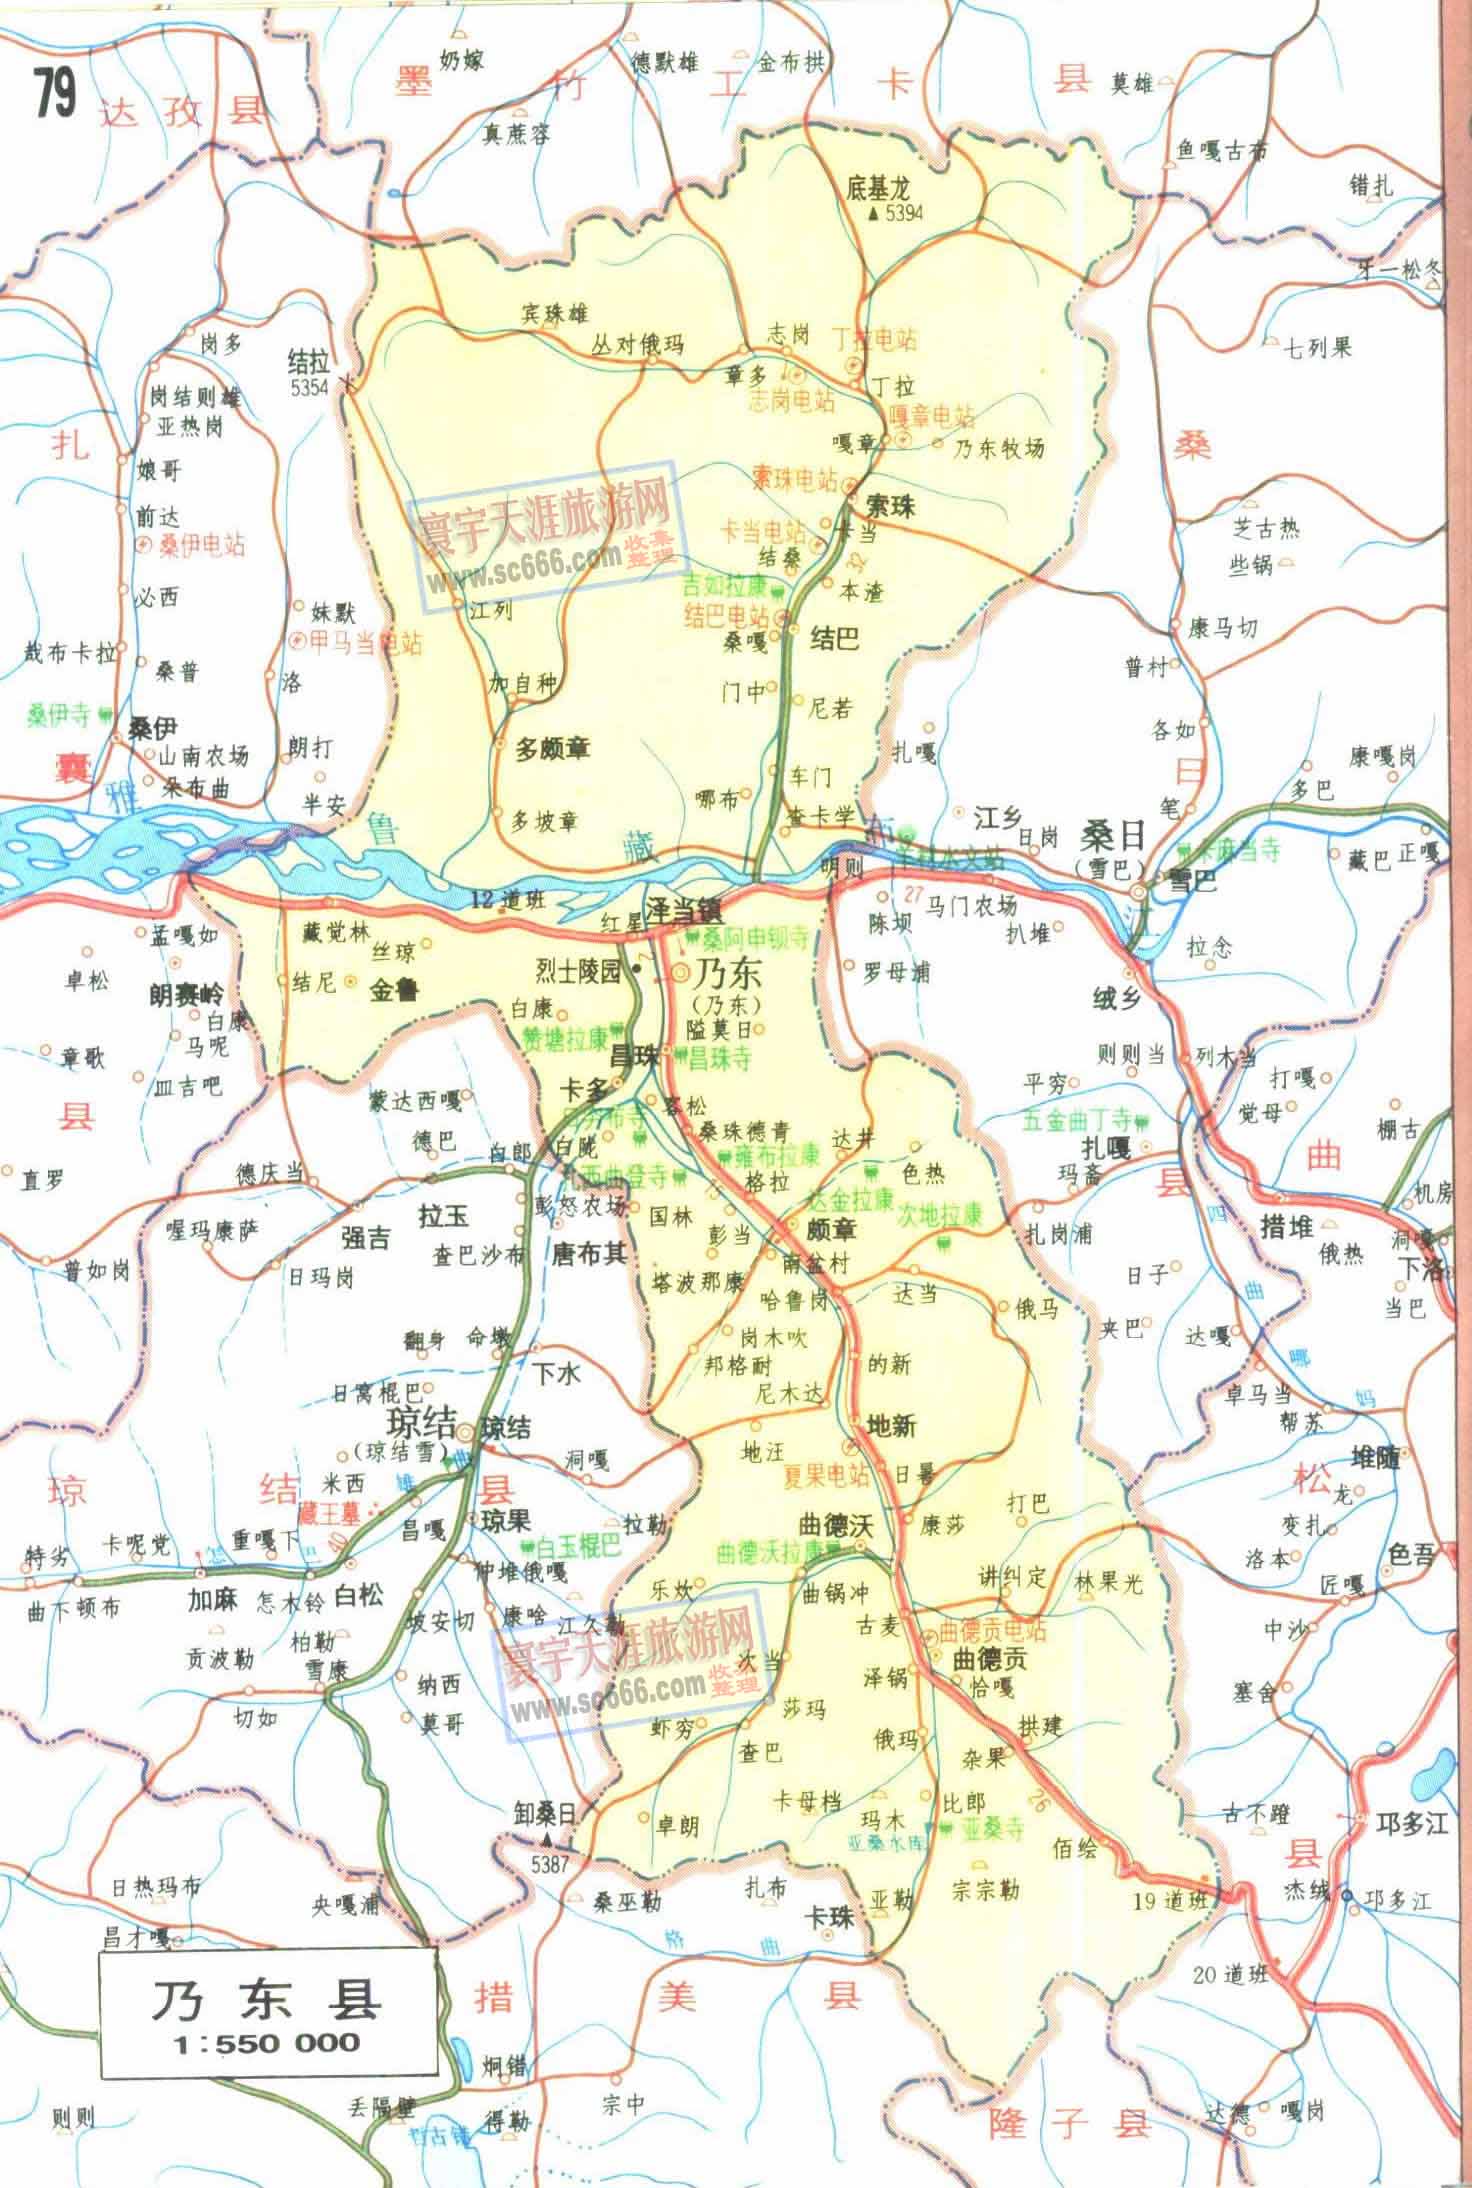 乃东县地图